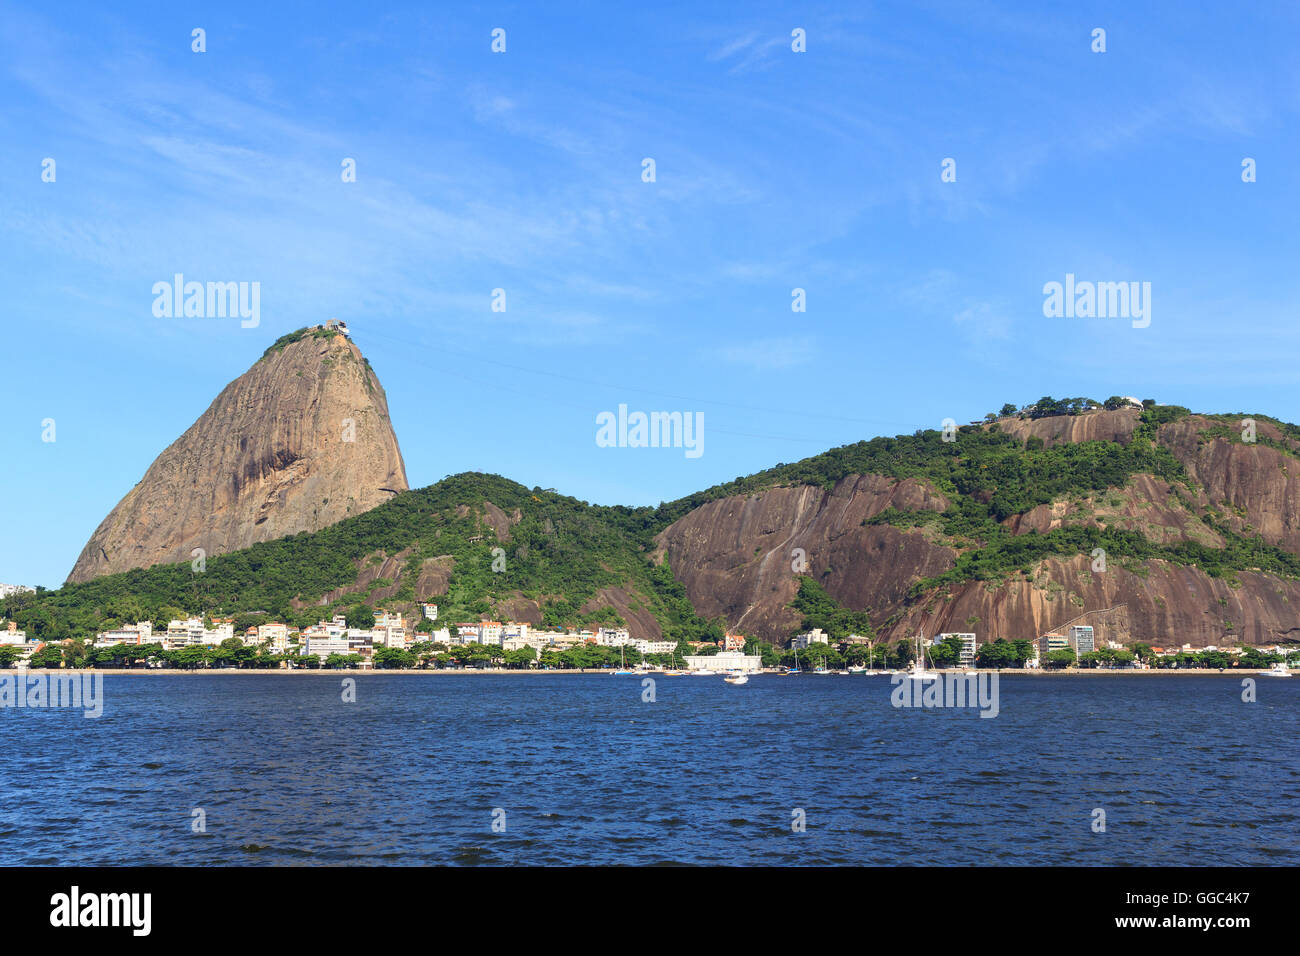 Sugarloaf Mountain de Botafogo, vide dans la mer jour ensoleillé, Rio de Janeiro, Brésil Banque D'Images